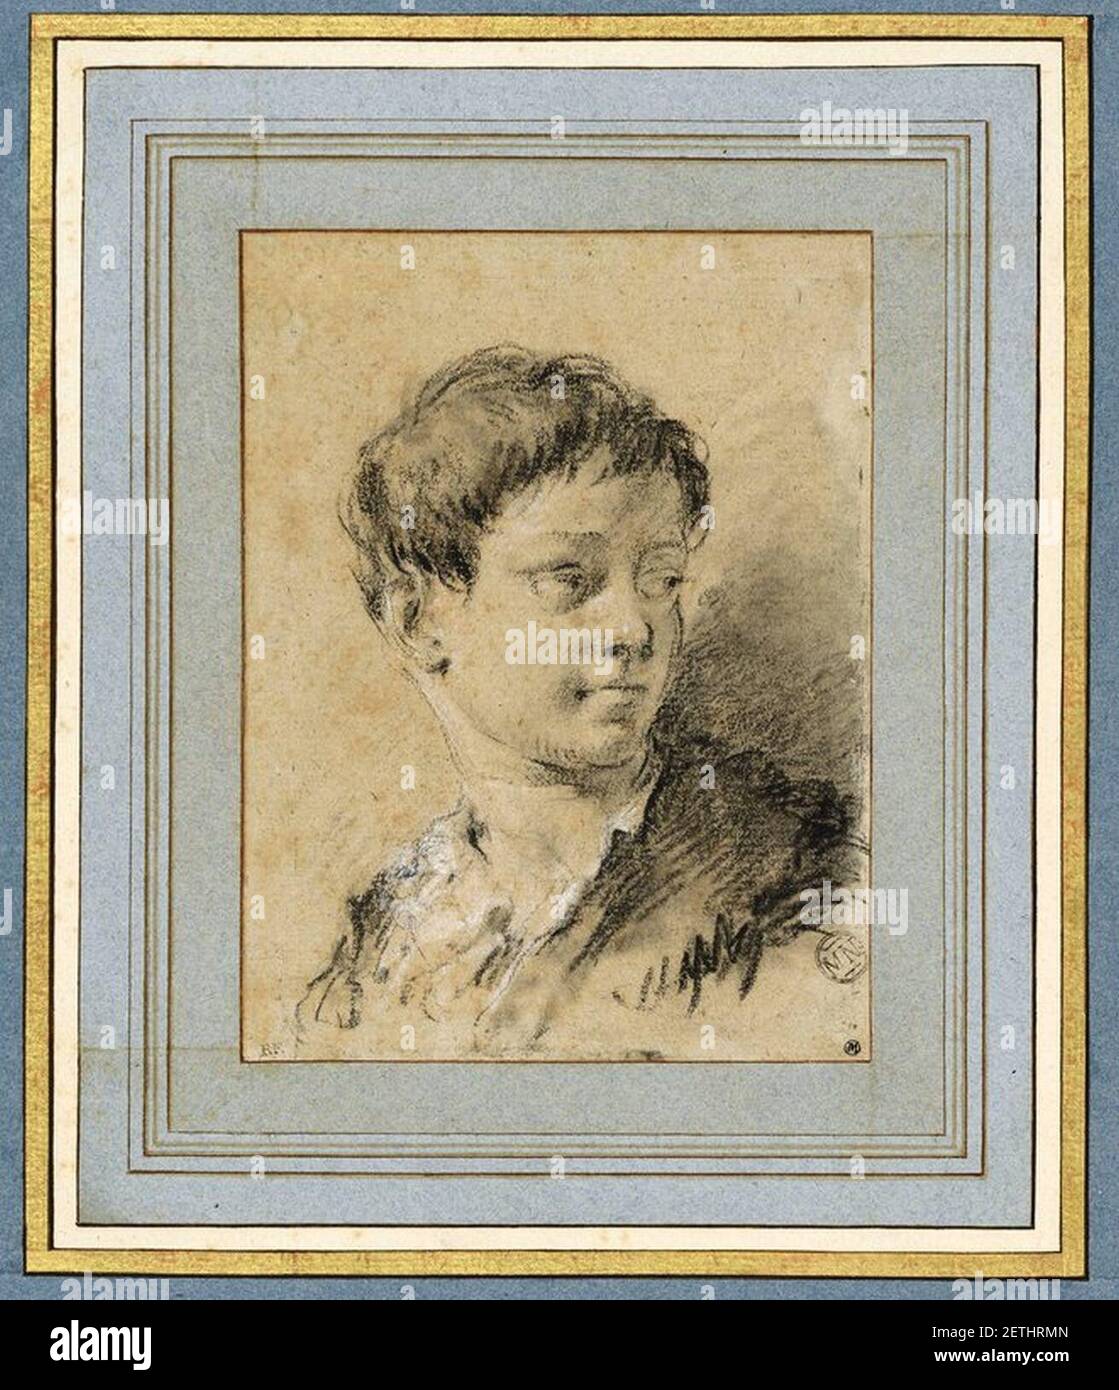 Piazzetta - Buste de jeune homme, de trois Quarts, regardant vers la droite, INV 5267, Recto. Stockfoto